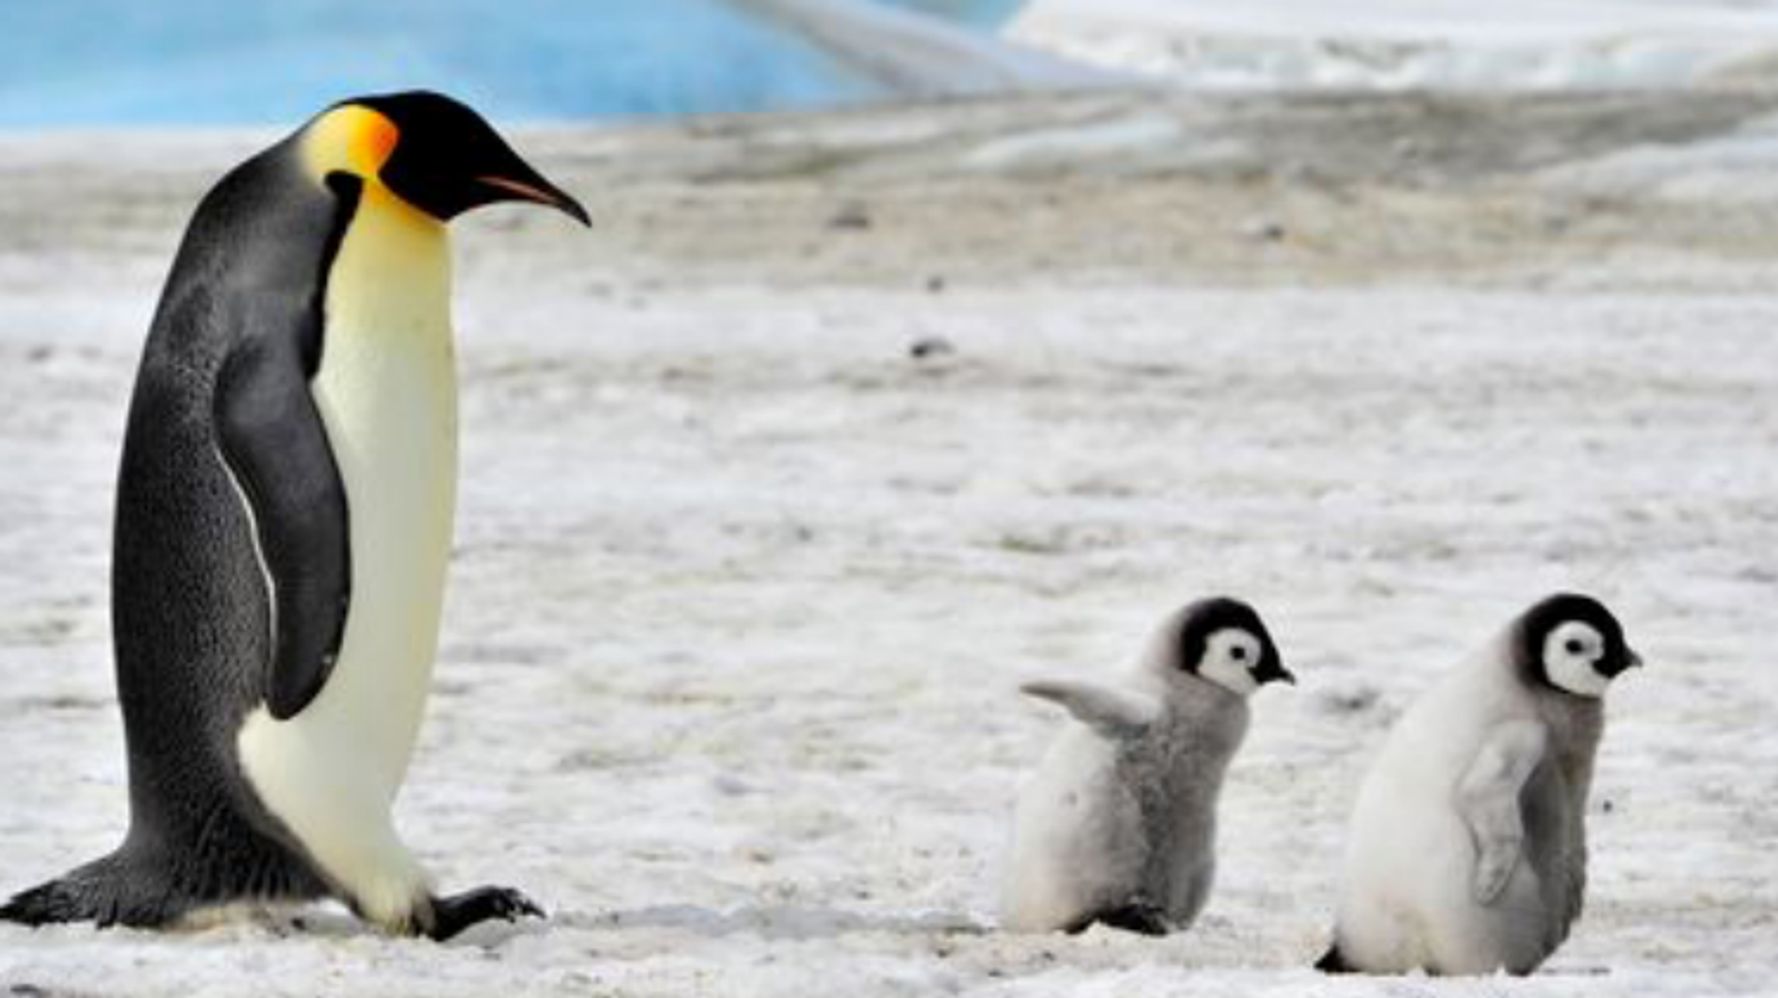 ペンギンの可愛いすぎるトリビア大集合 ソリのように移動し 顔にあごひも 画像集 ハフポスト Life